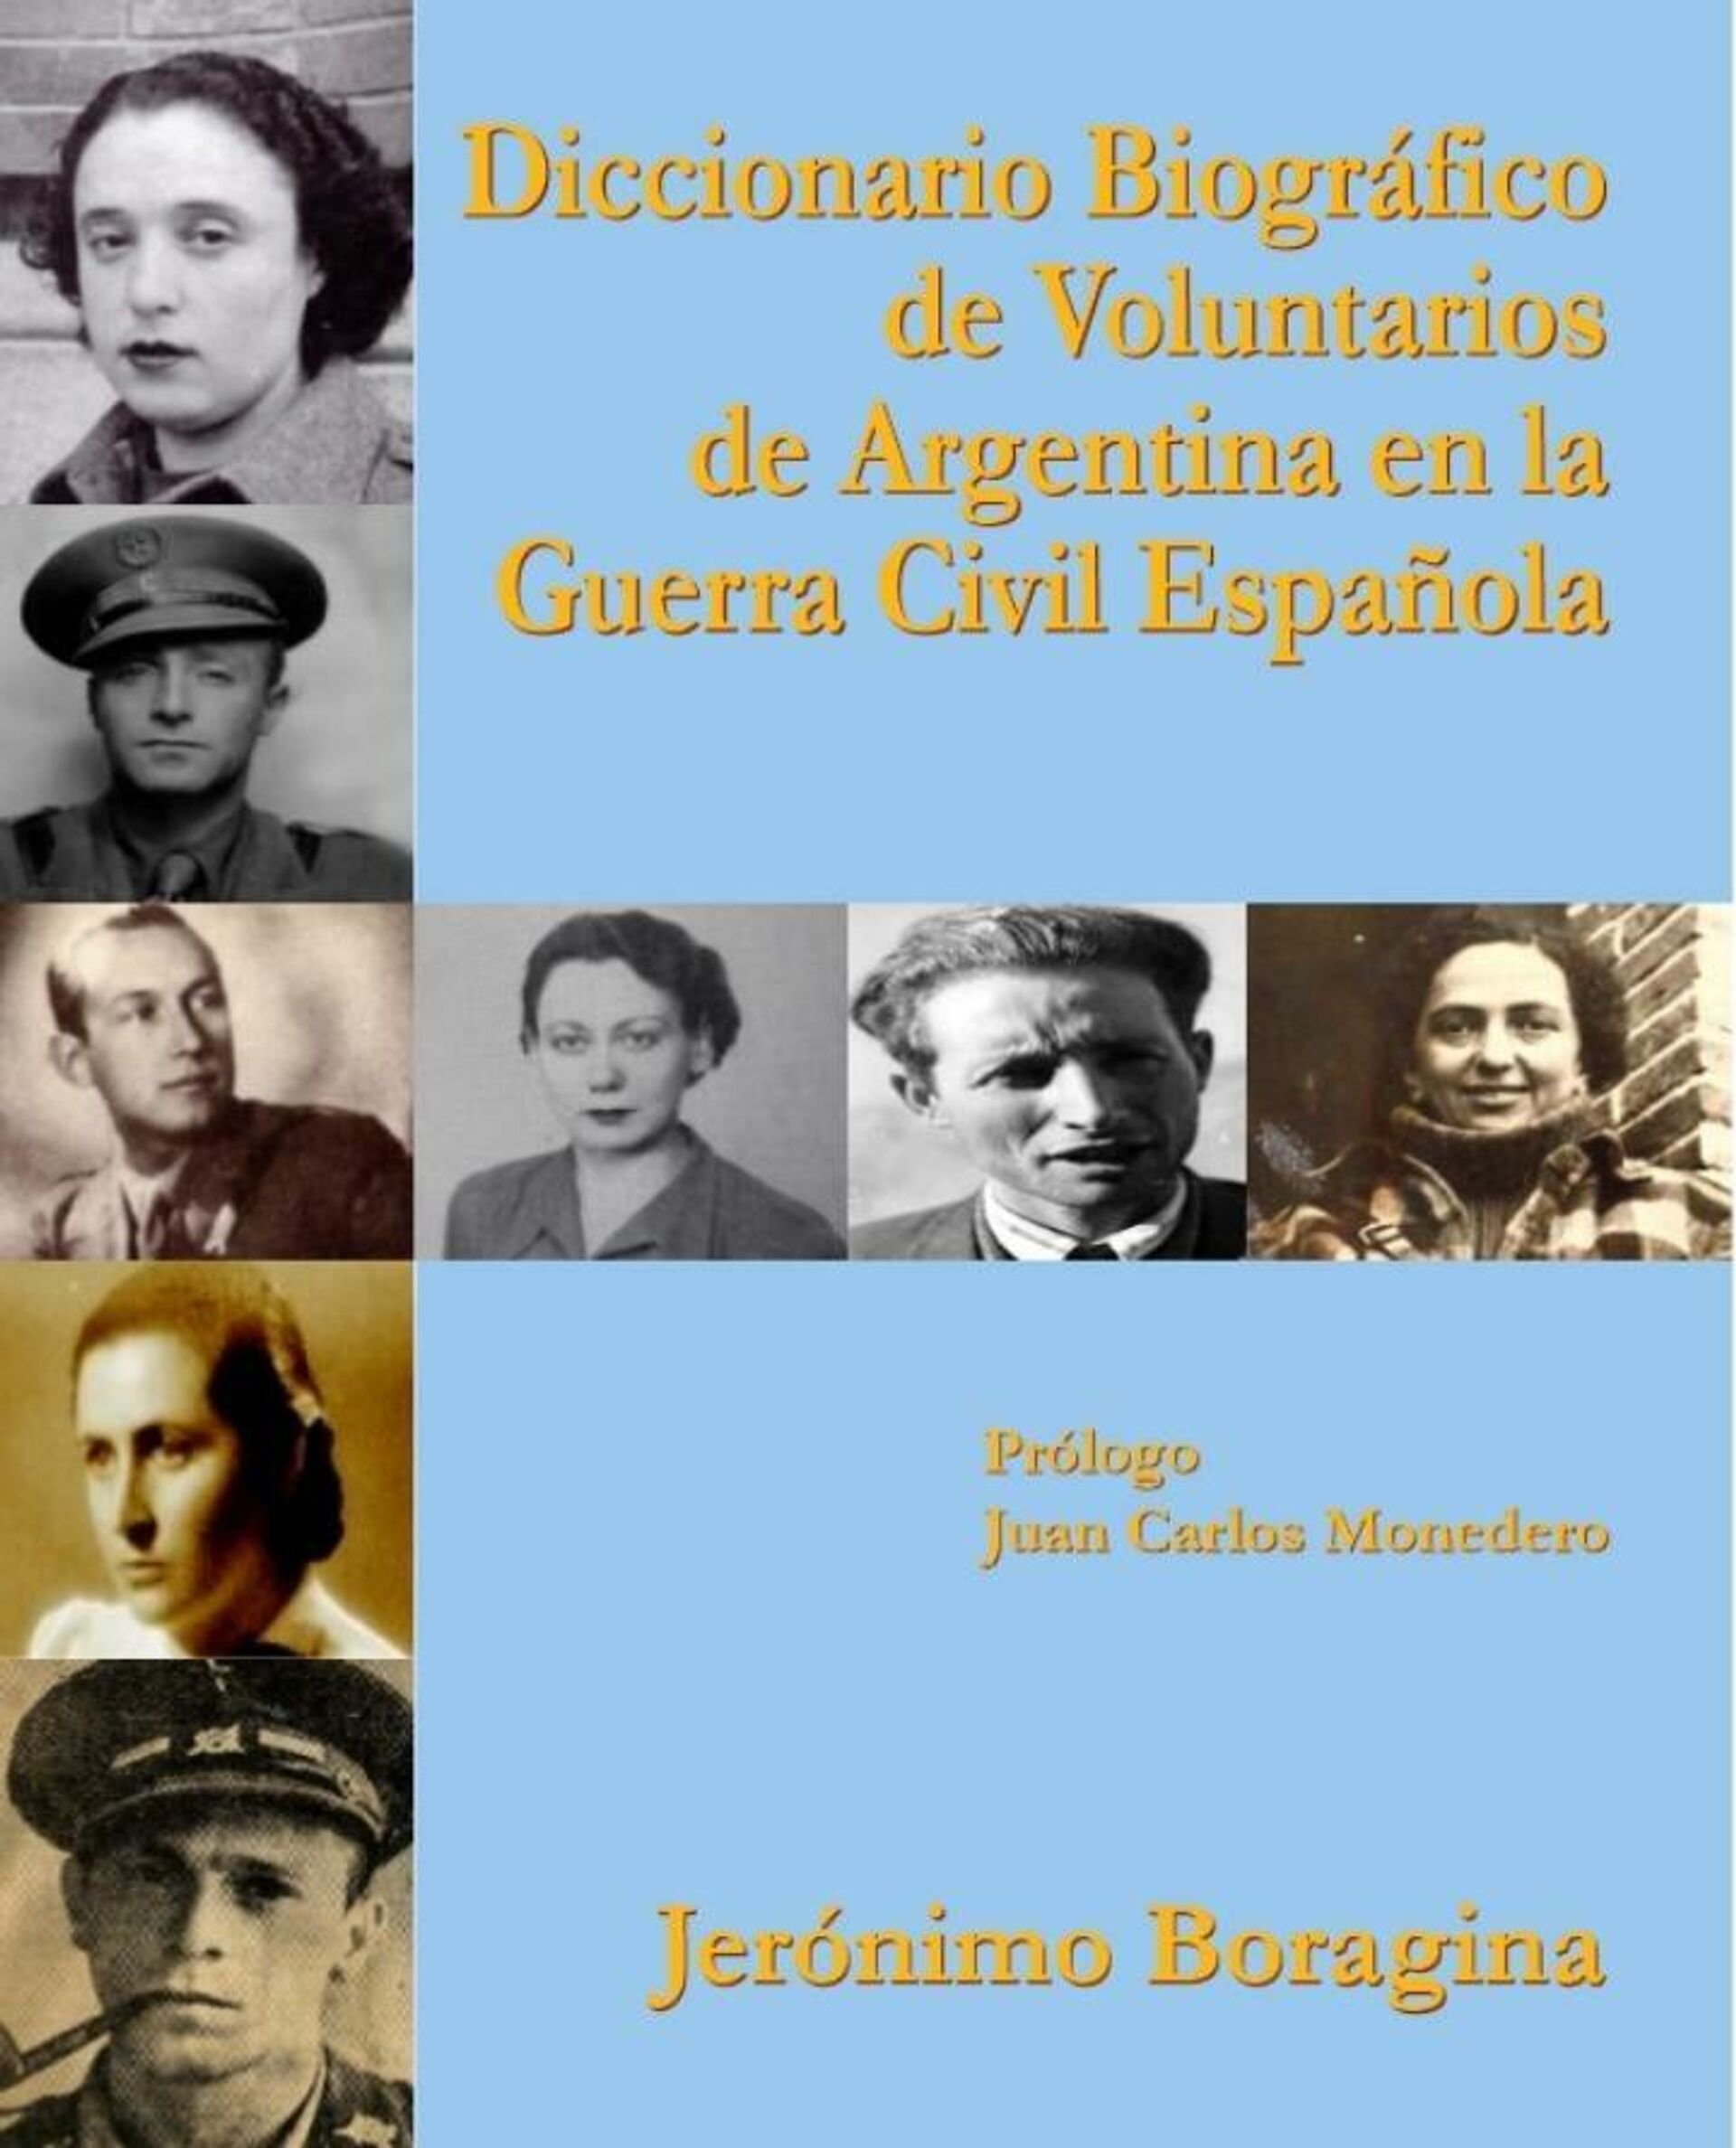 Diccionario Biográfico de Voluntarios de Argentina en la Guerra Civil Española, obra de Jerónimo Boragina  - Sputnik Mundo, 1920, 16.07.2021